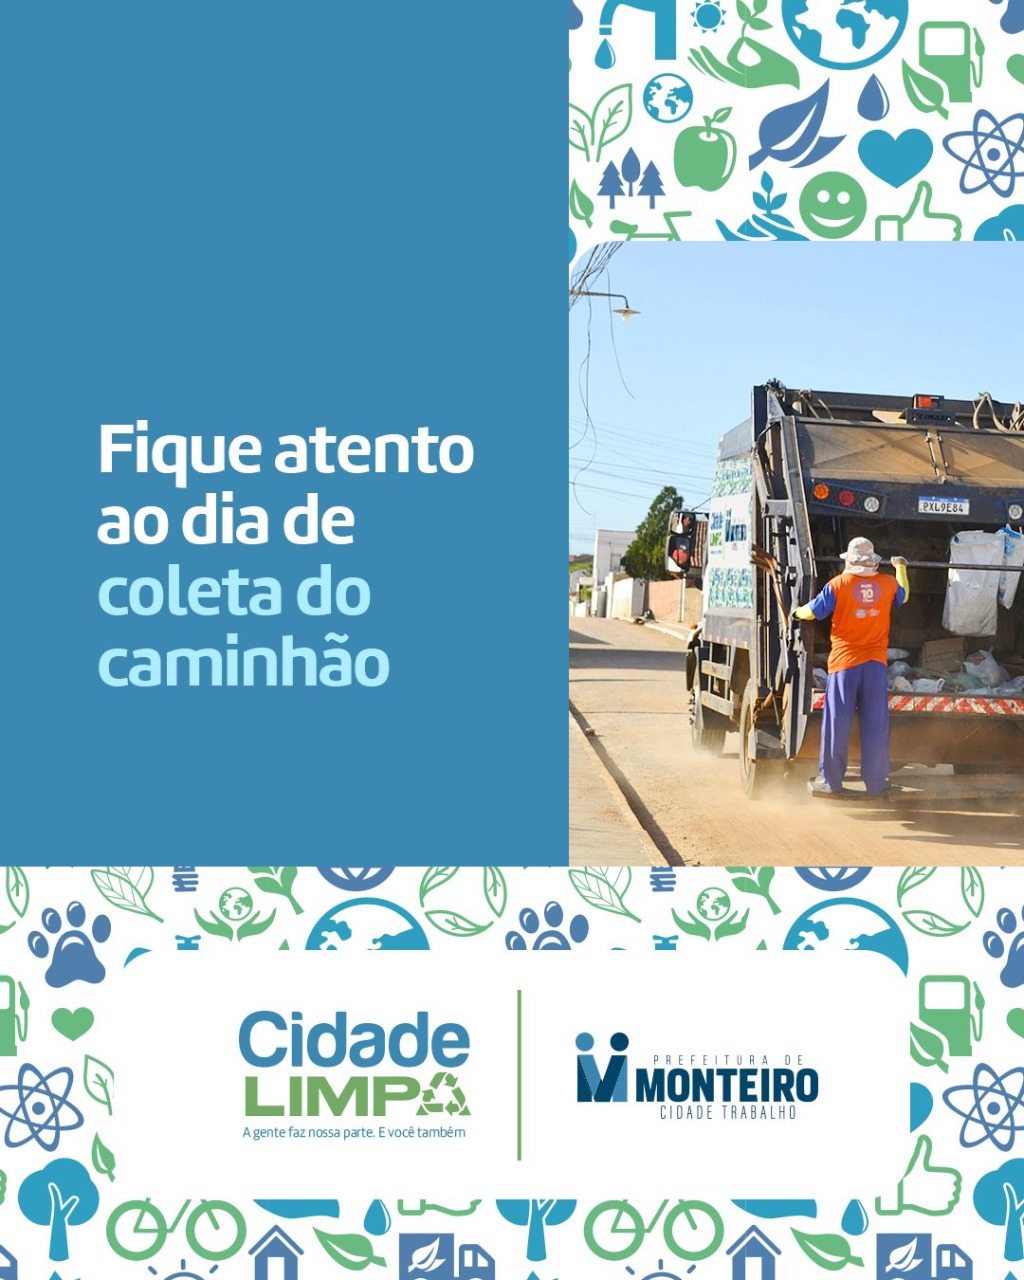 Prefeitura de Monteiro lança campanha de orientação de limpeza urbana e coleta de lixo